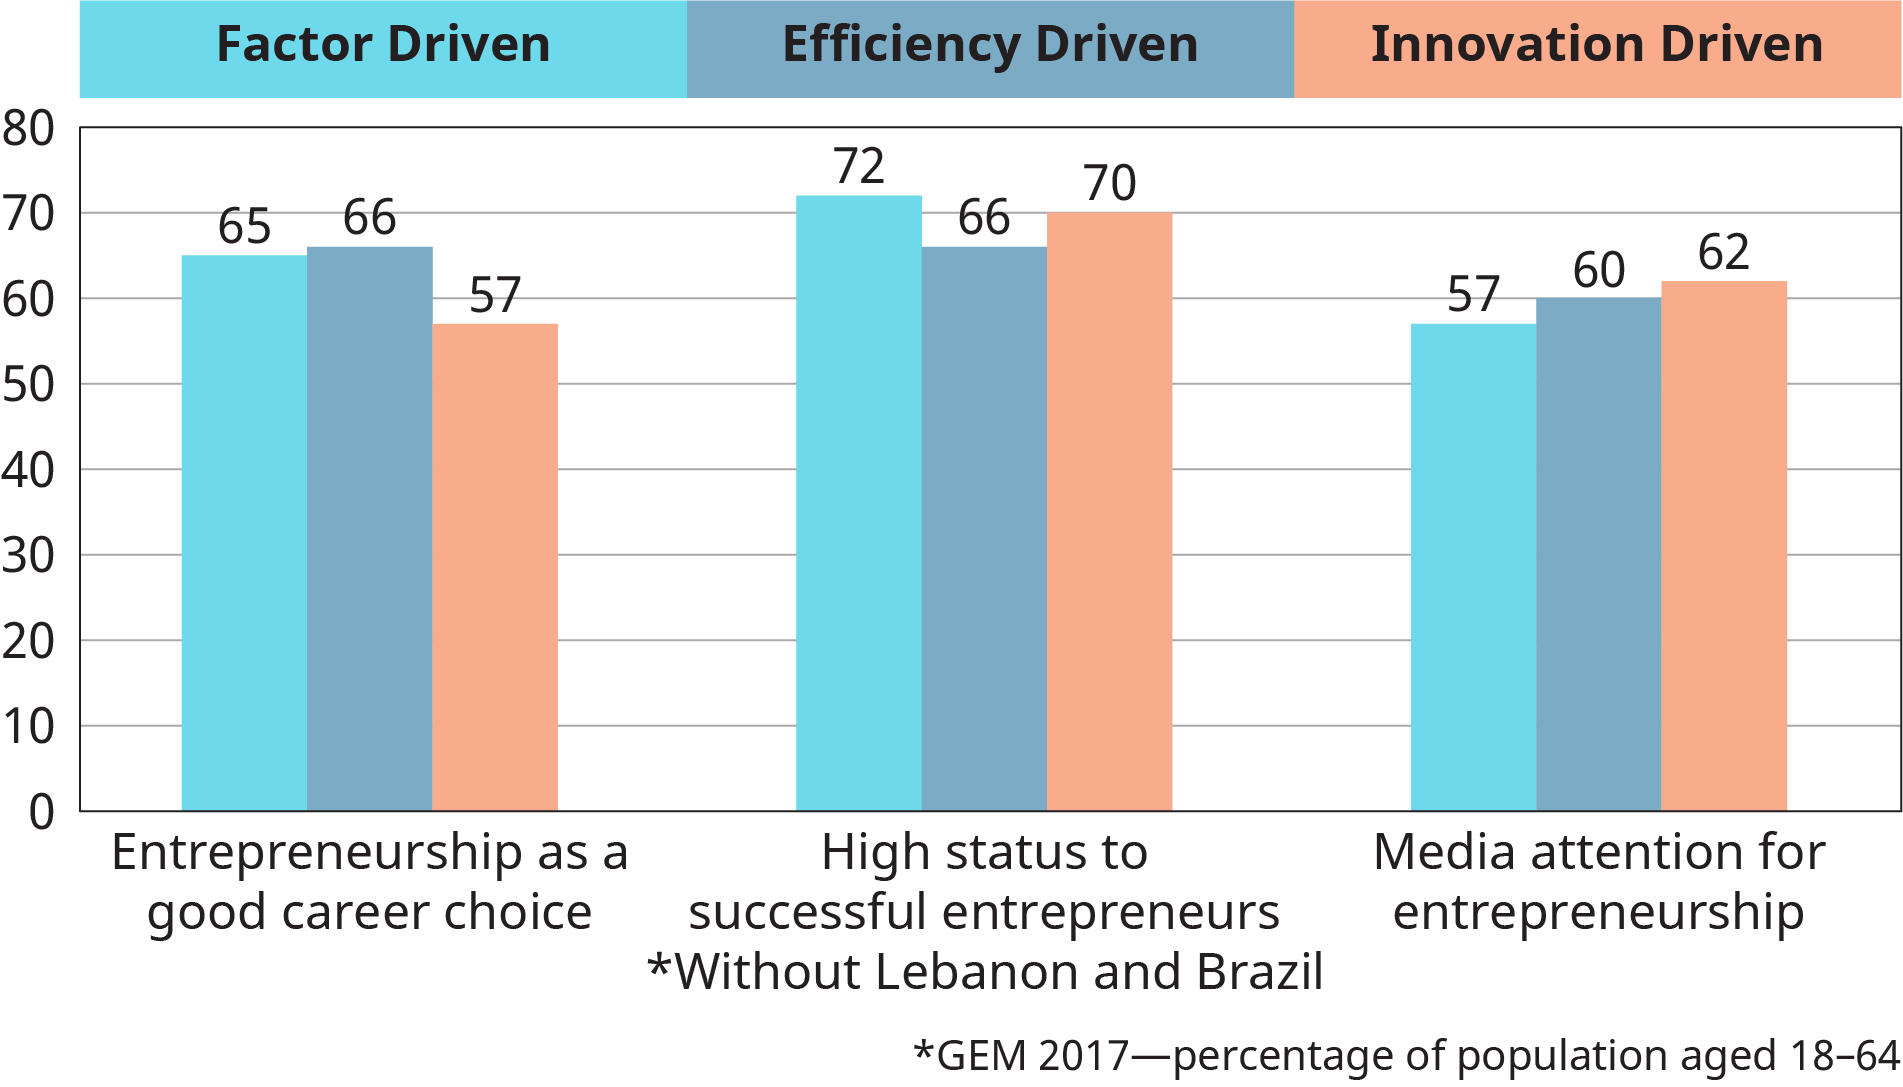 Uma representação gráfica traça as médias do grupo de desenvolvimento para os valores sociais sobre empreendedorismo com base em fatores orientados por fatores, orientados pela eficiência e impulsionados pela inovação.